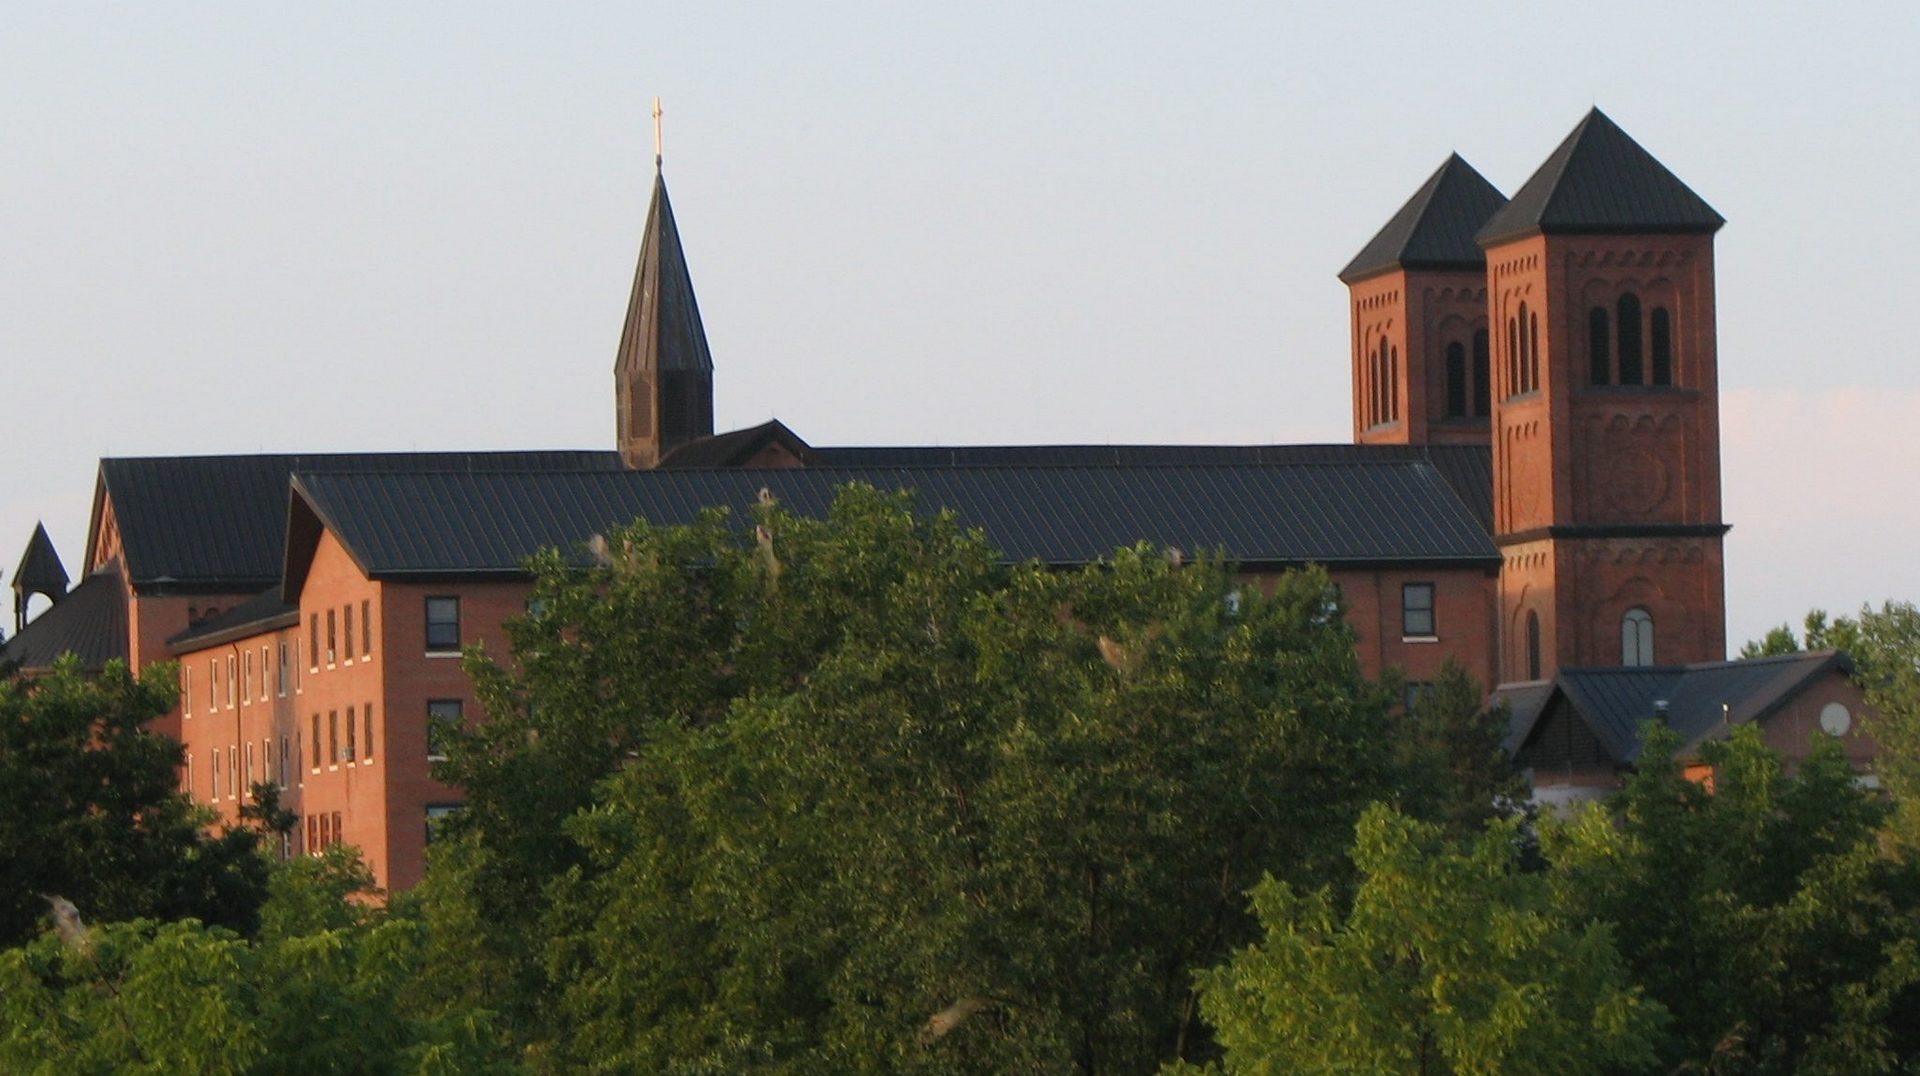 L'Abbaye de Conception dans le Missouri a été fondée en 1873 par les bénédictins d'Engelberg, en Suisse (photo wikimedia commons CC-BY-SA-2.5)